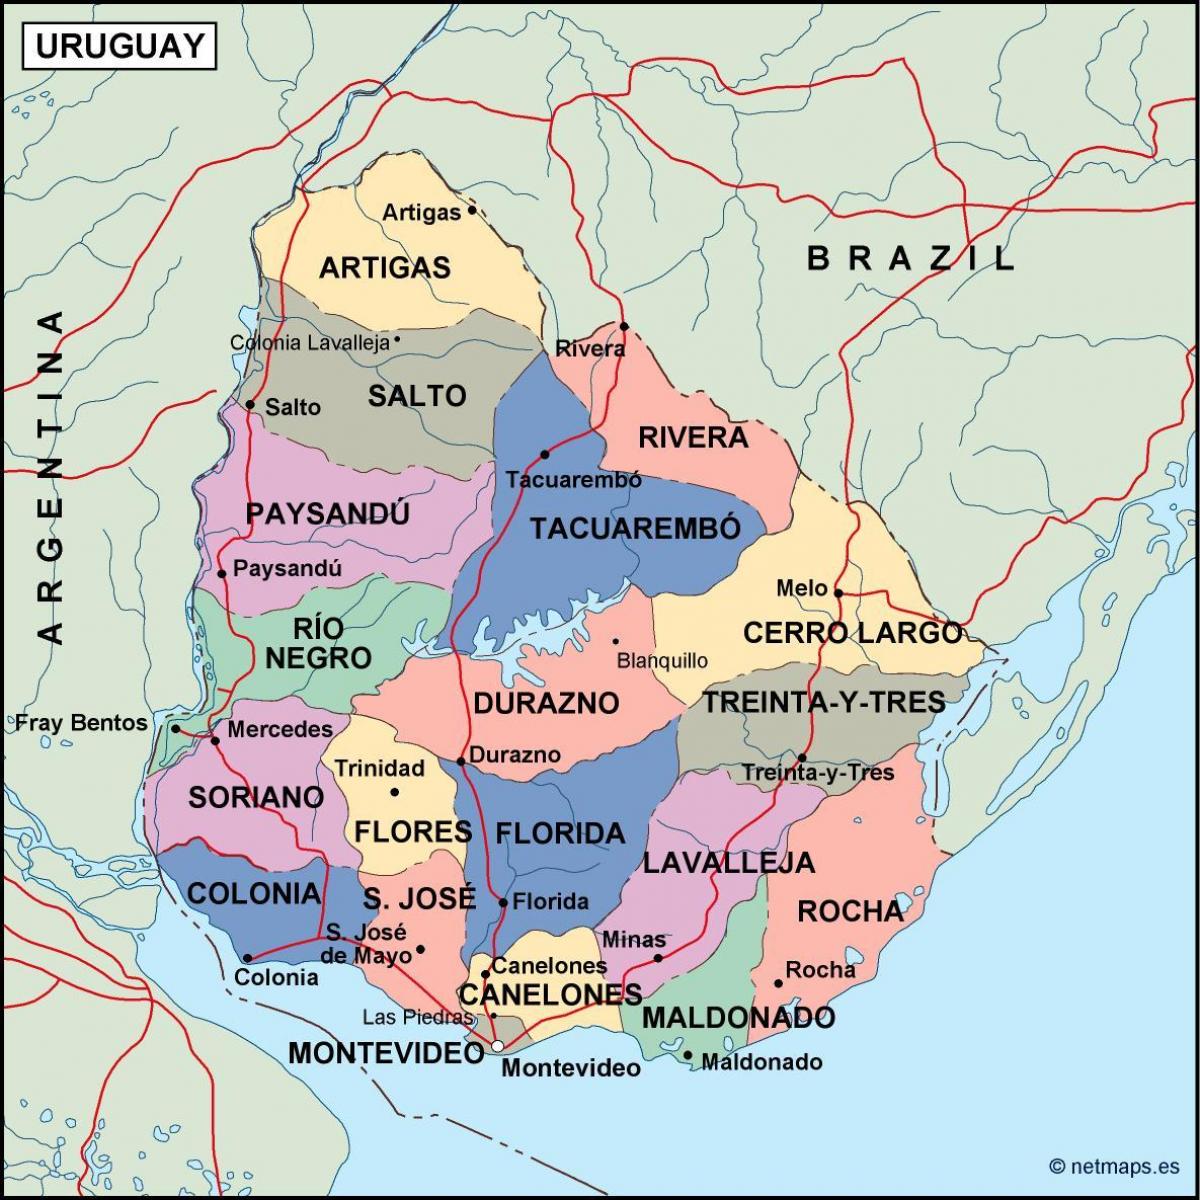 Térkép maldonado Uruguay